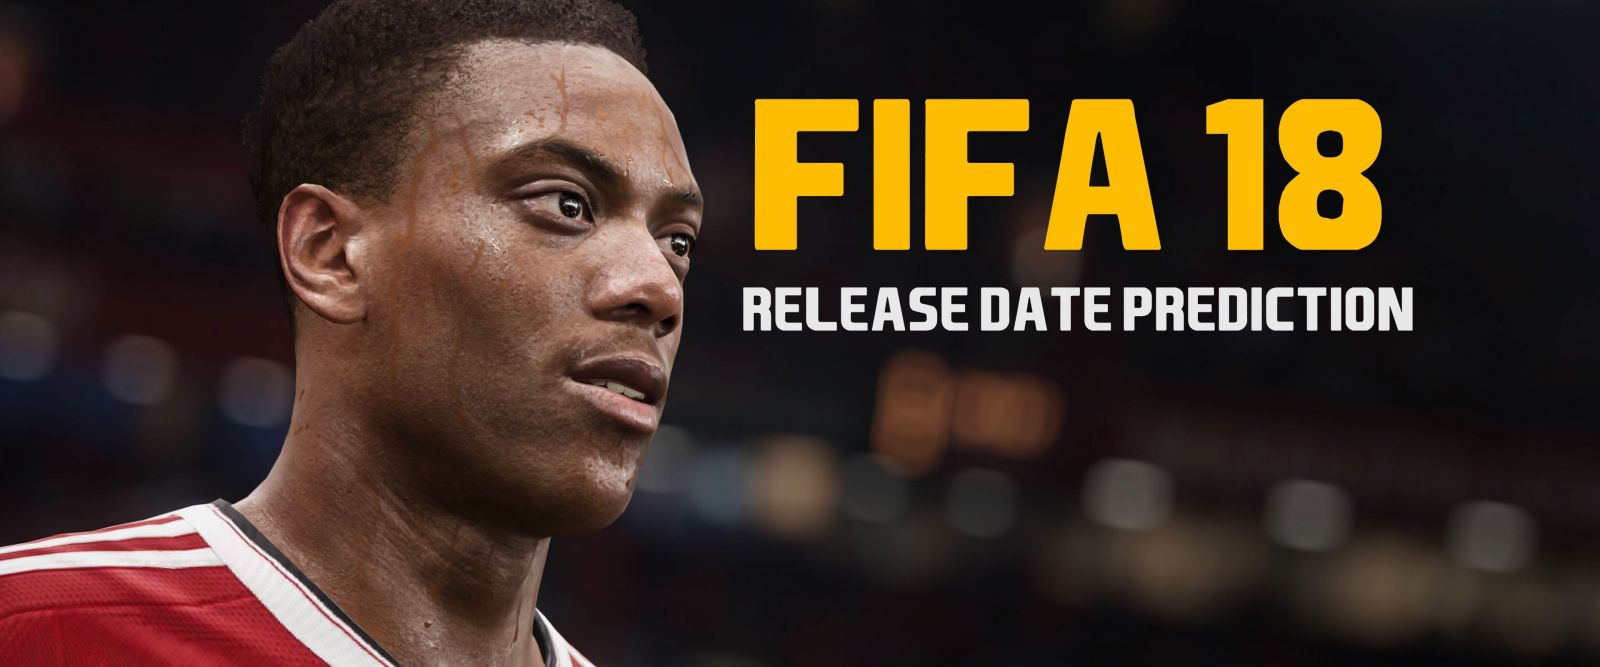 FIFA 18 Release Date Prediction